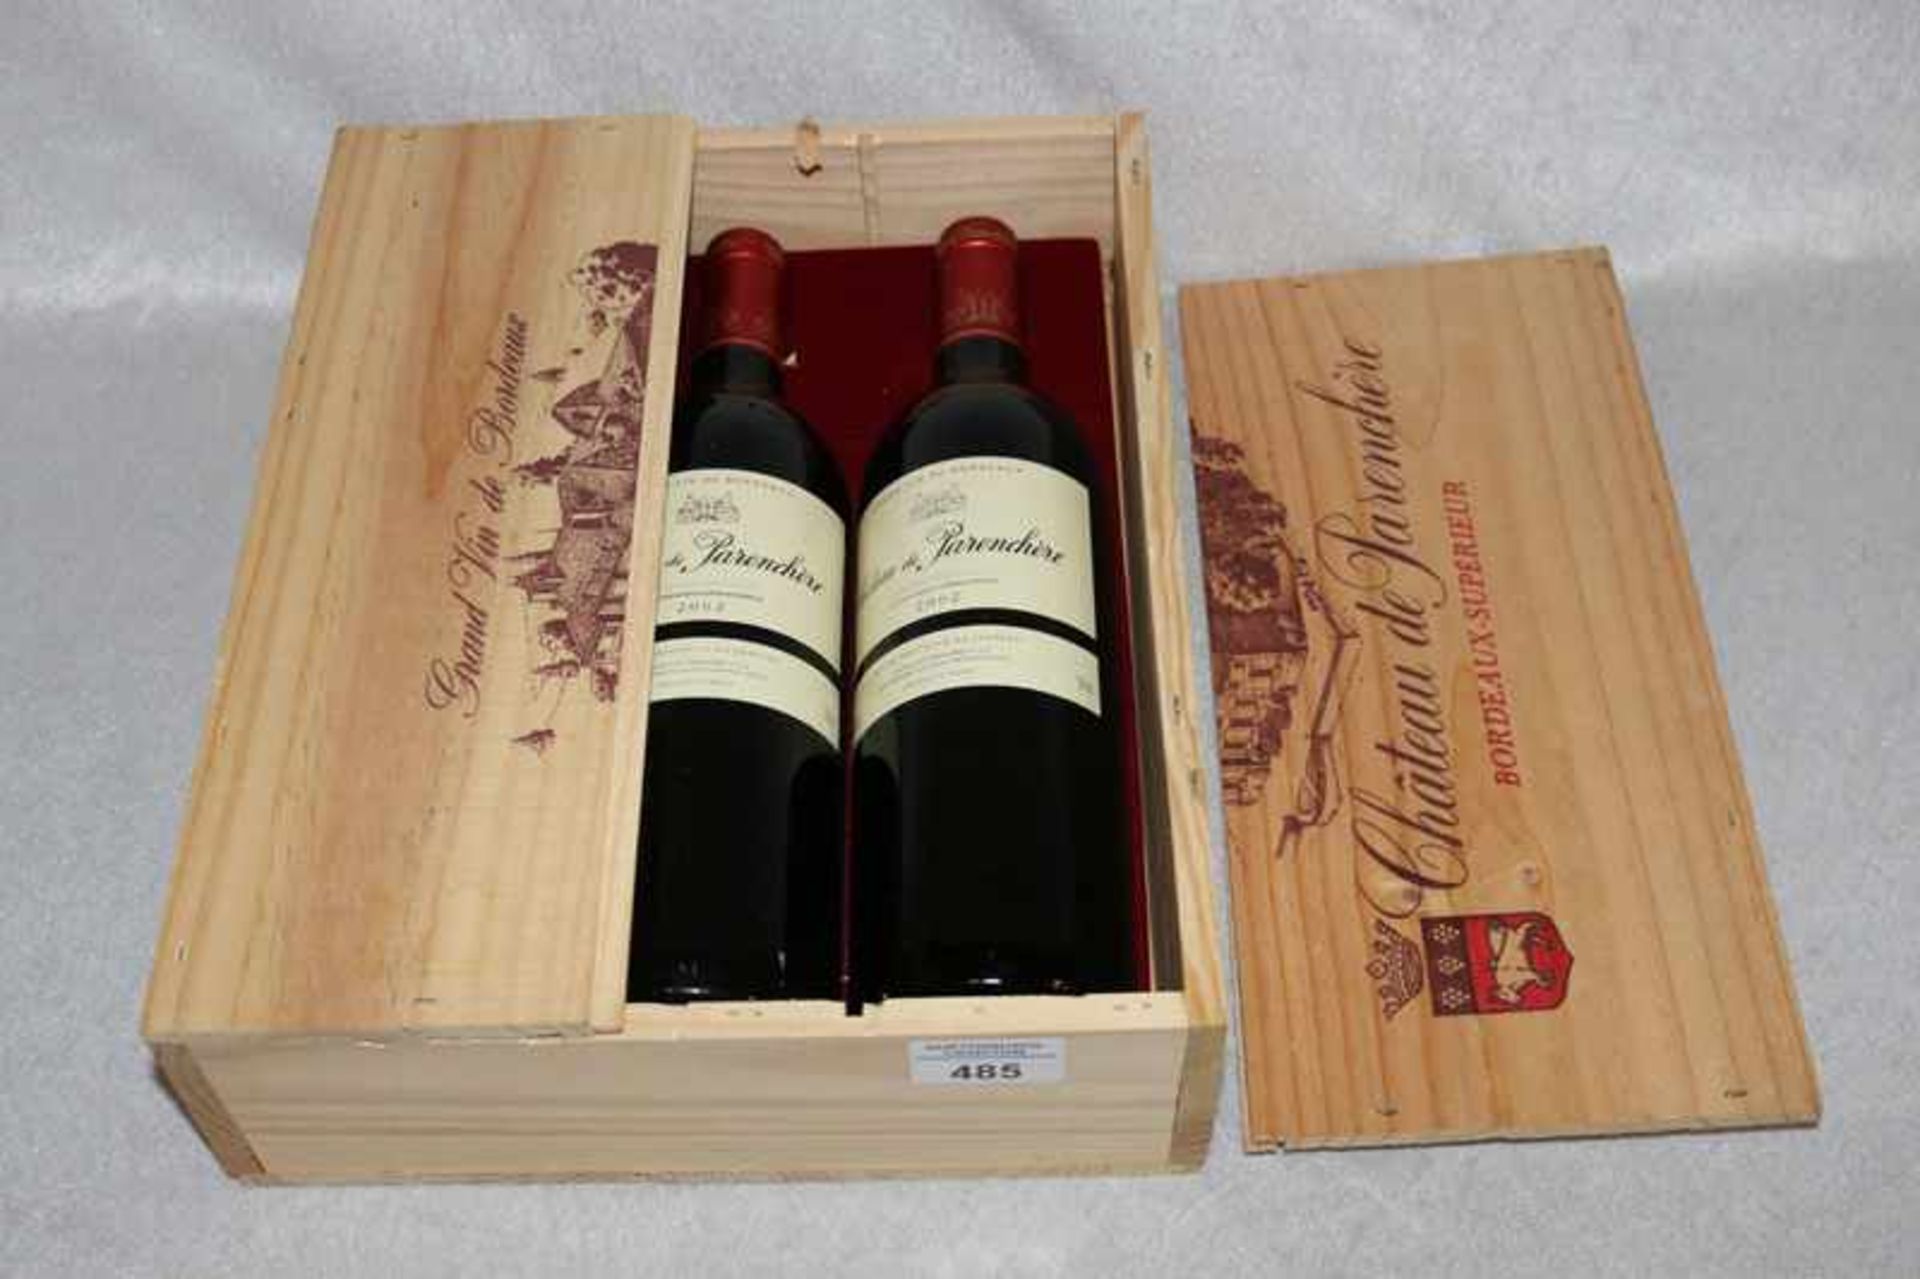 Holzkiste mit 3 Flaschen Rotwein, Chateau de Parenchére, Bordeau Superieur 2002